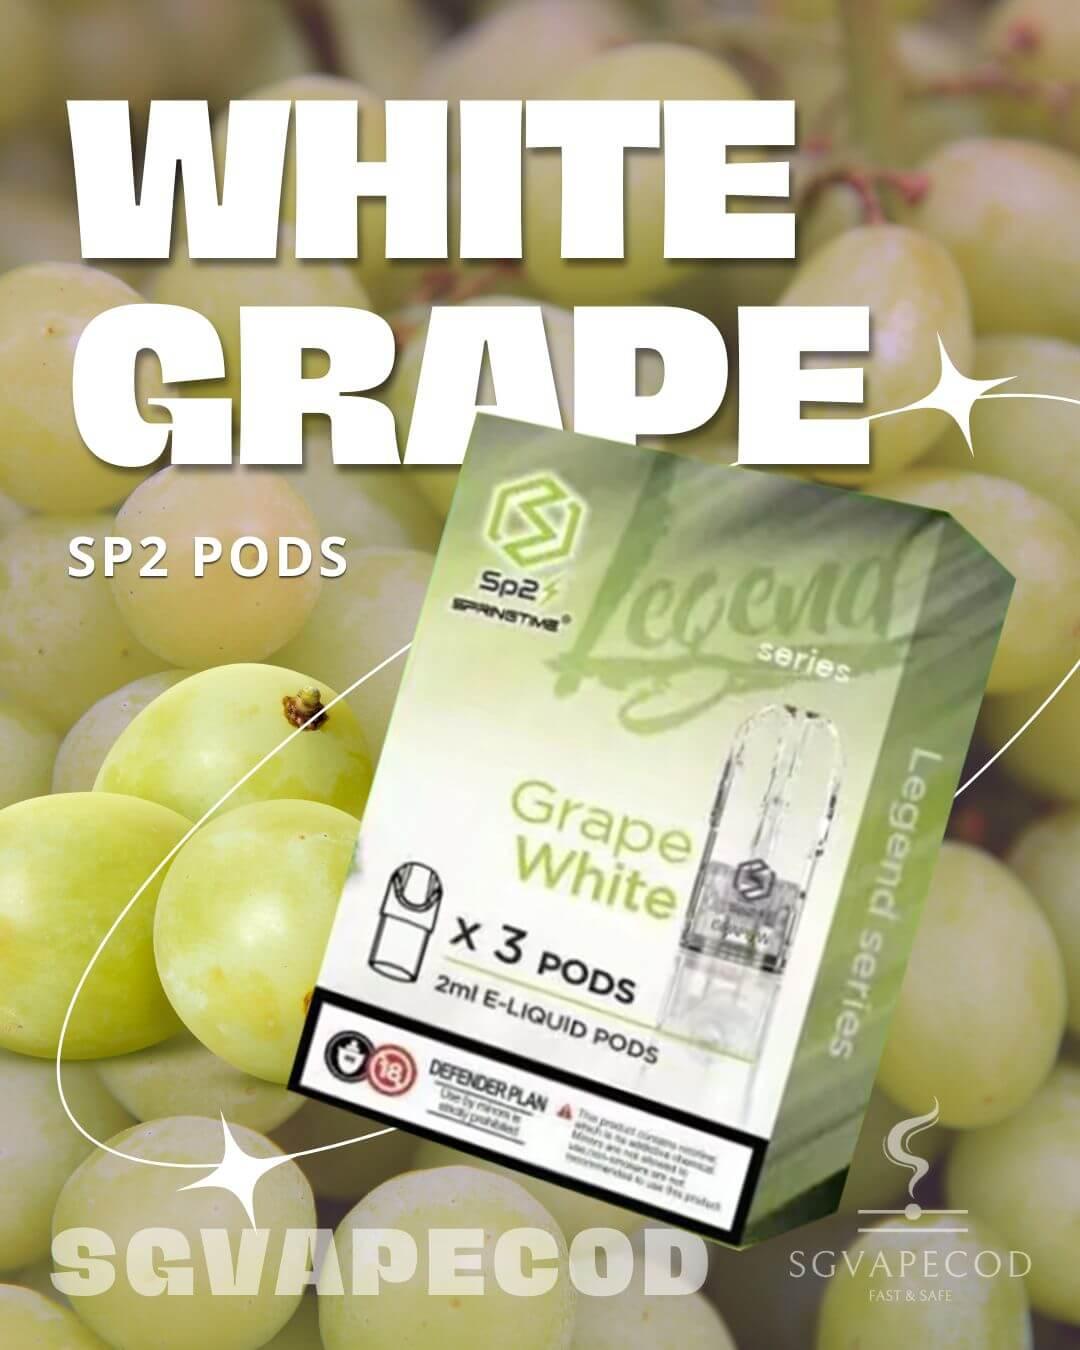 Sp2-Pod-White-Grape-(SG VAPE COD)